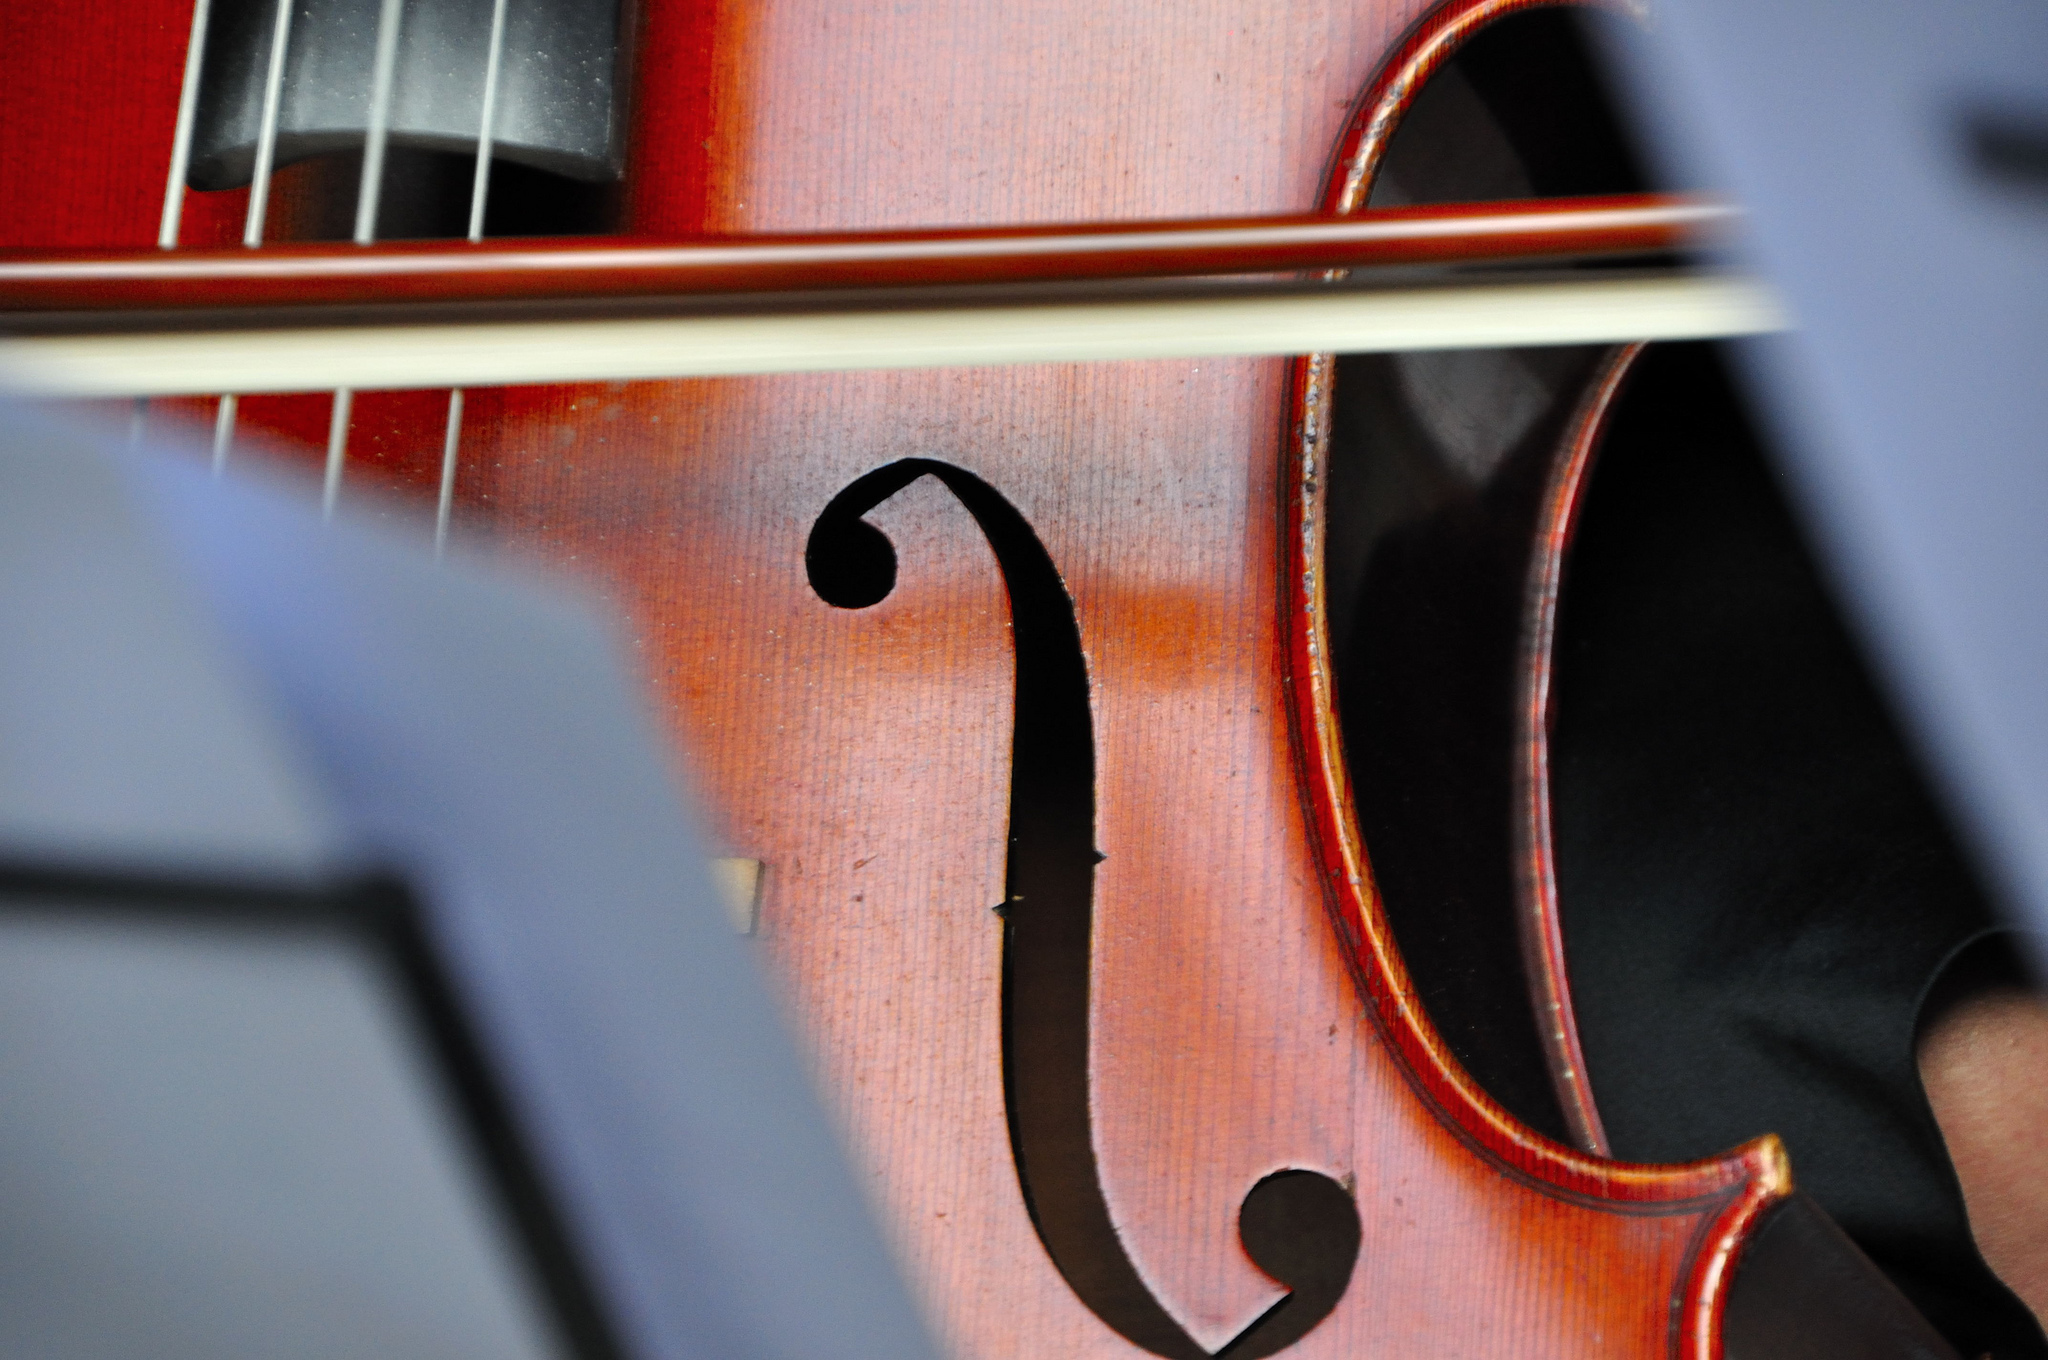 Pirmąją gegužės savaitę Klaipėda taps violončelės sostine